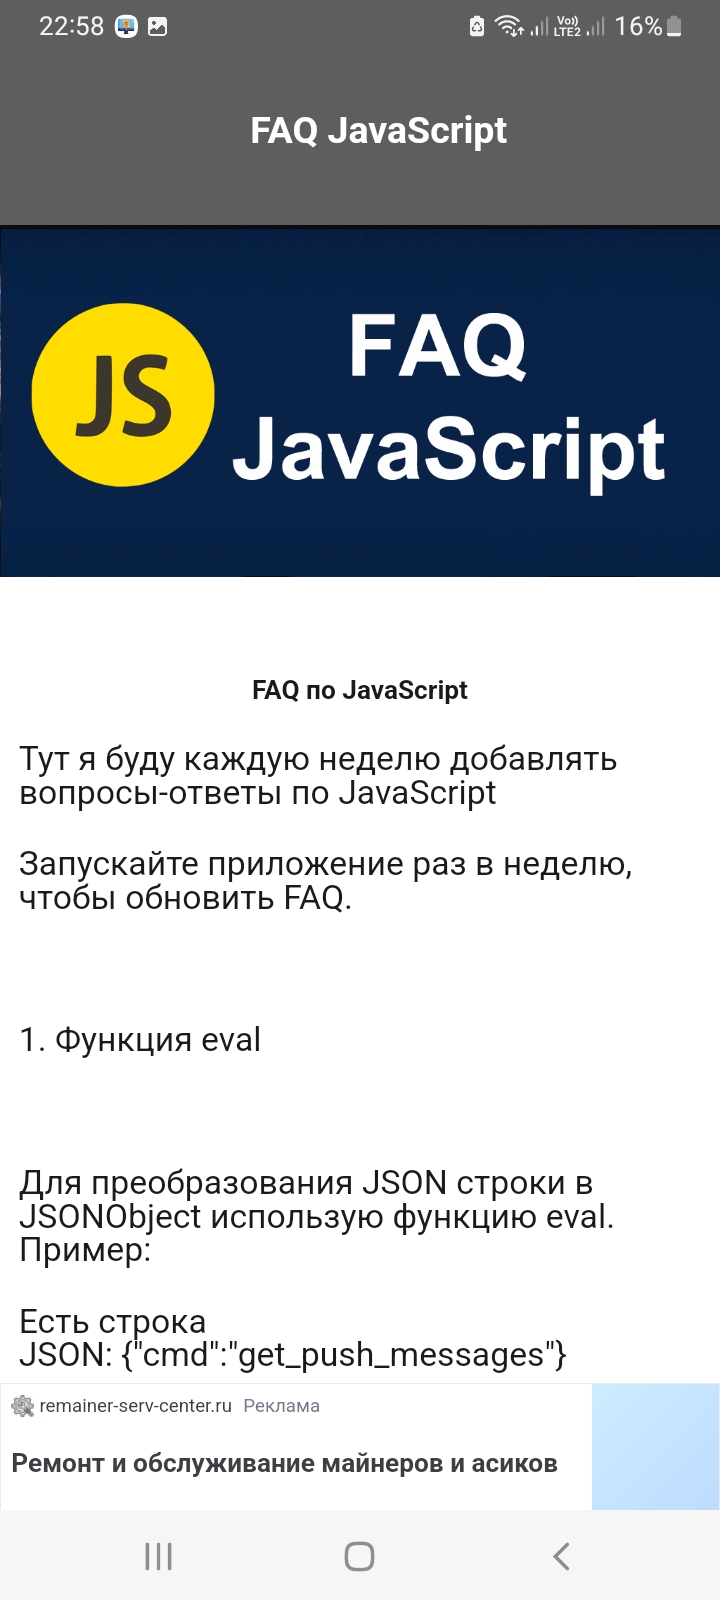 Изображение: FAQ: JavaScript